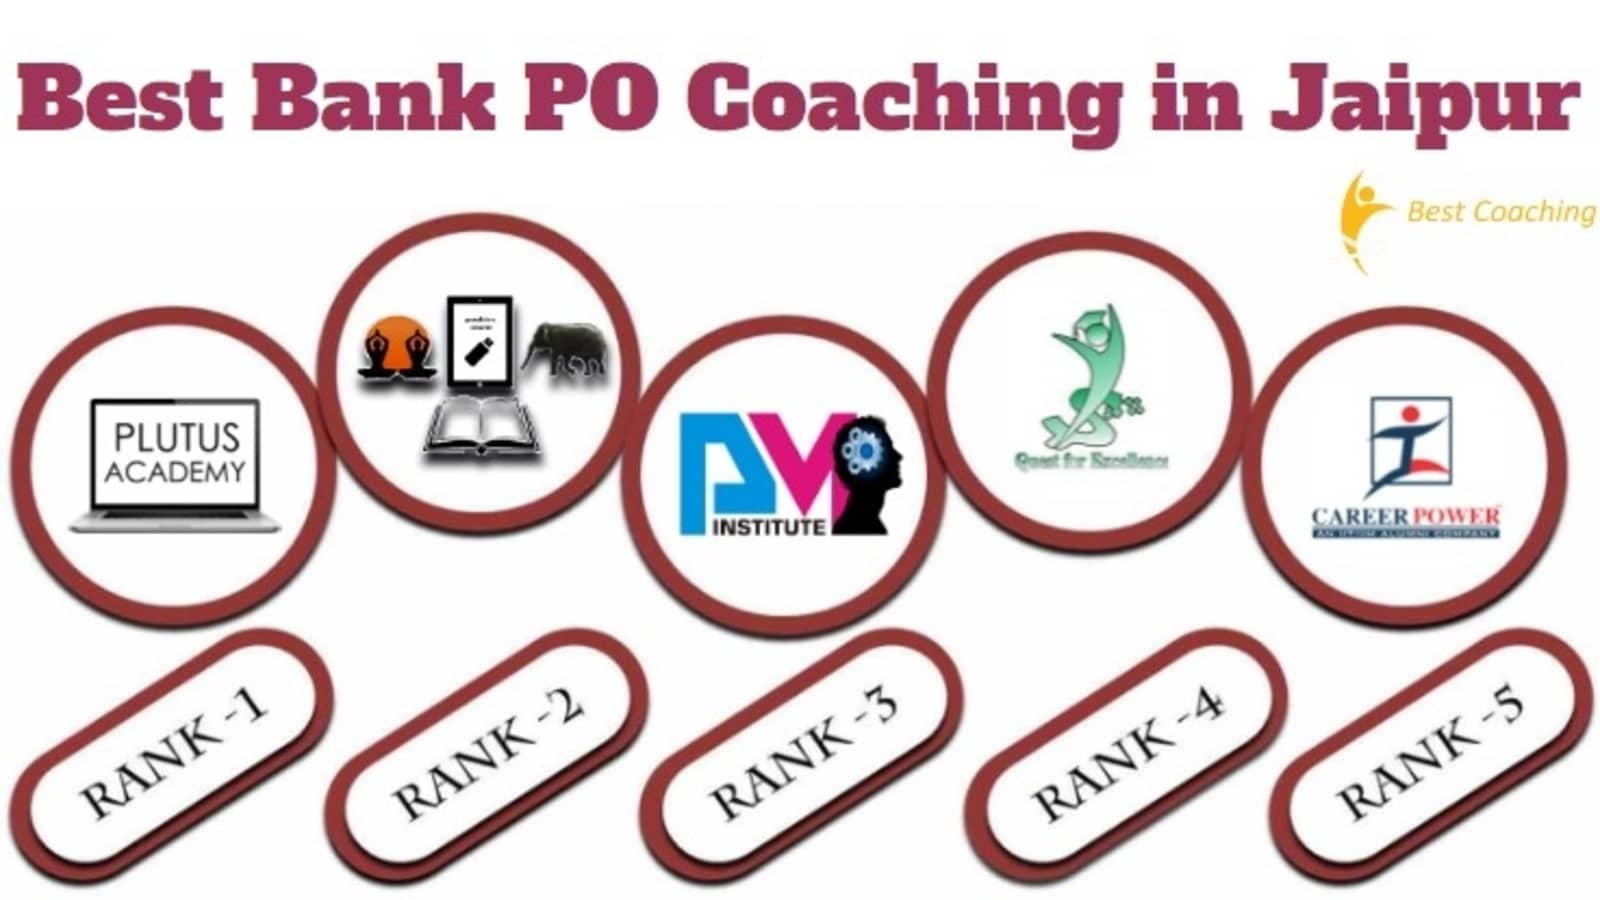 Best Bank PO Coaching in Jaipur